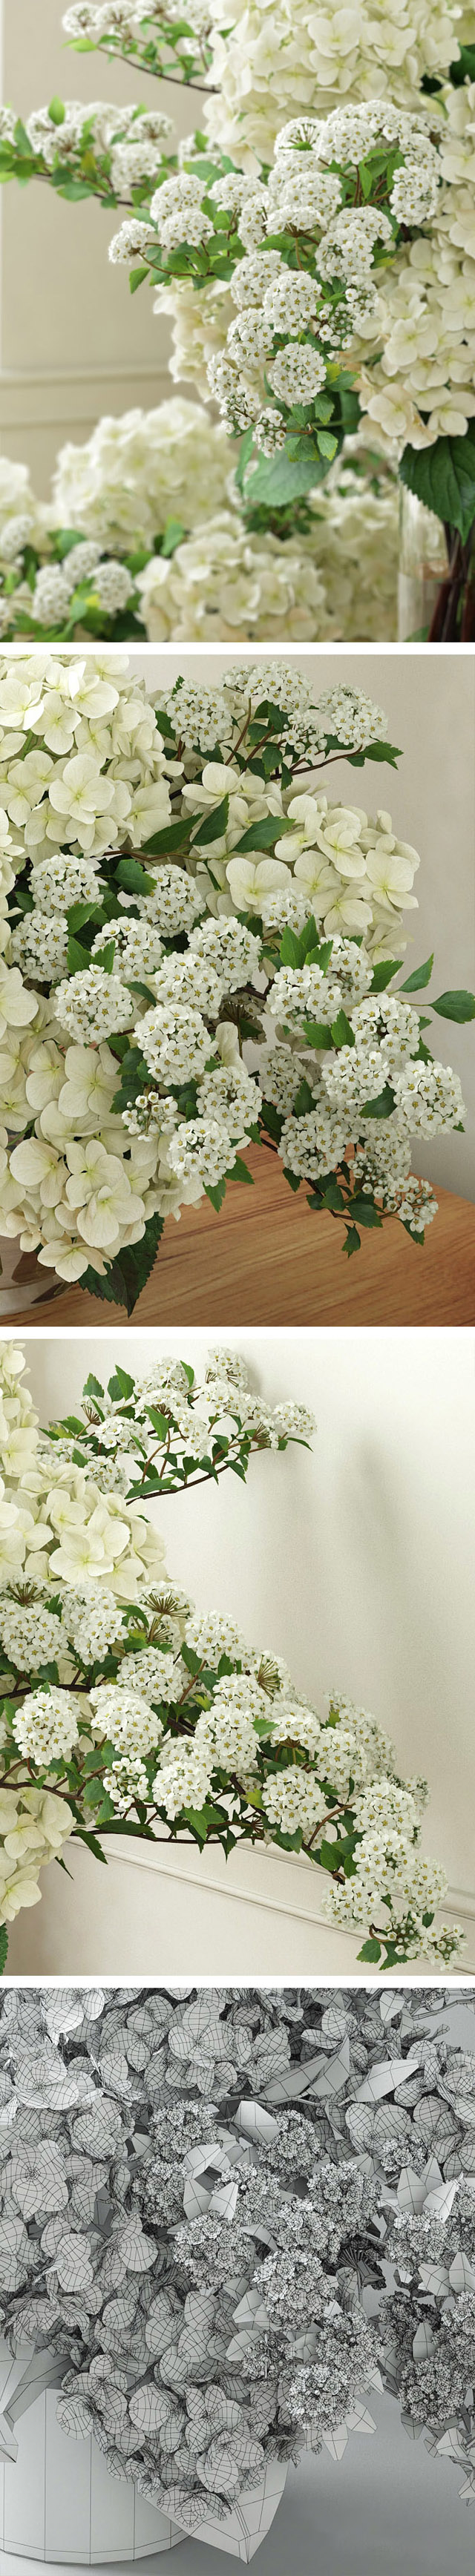 窗台阳光下的白色绣球花3d植物模型插图